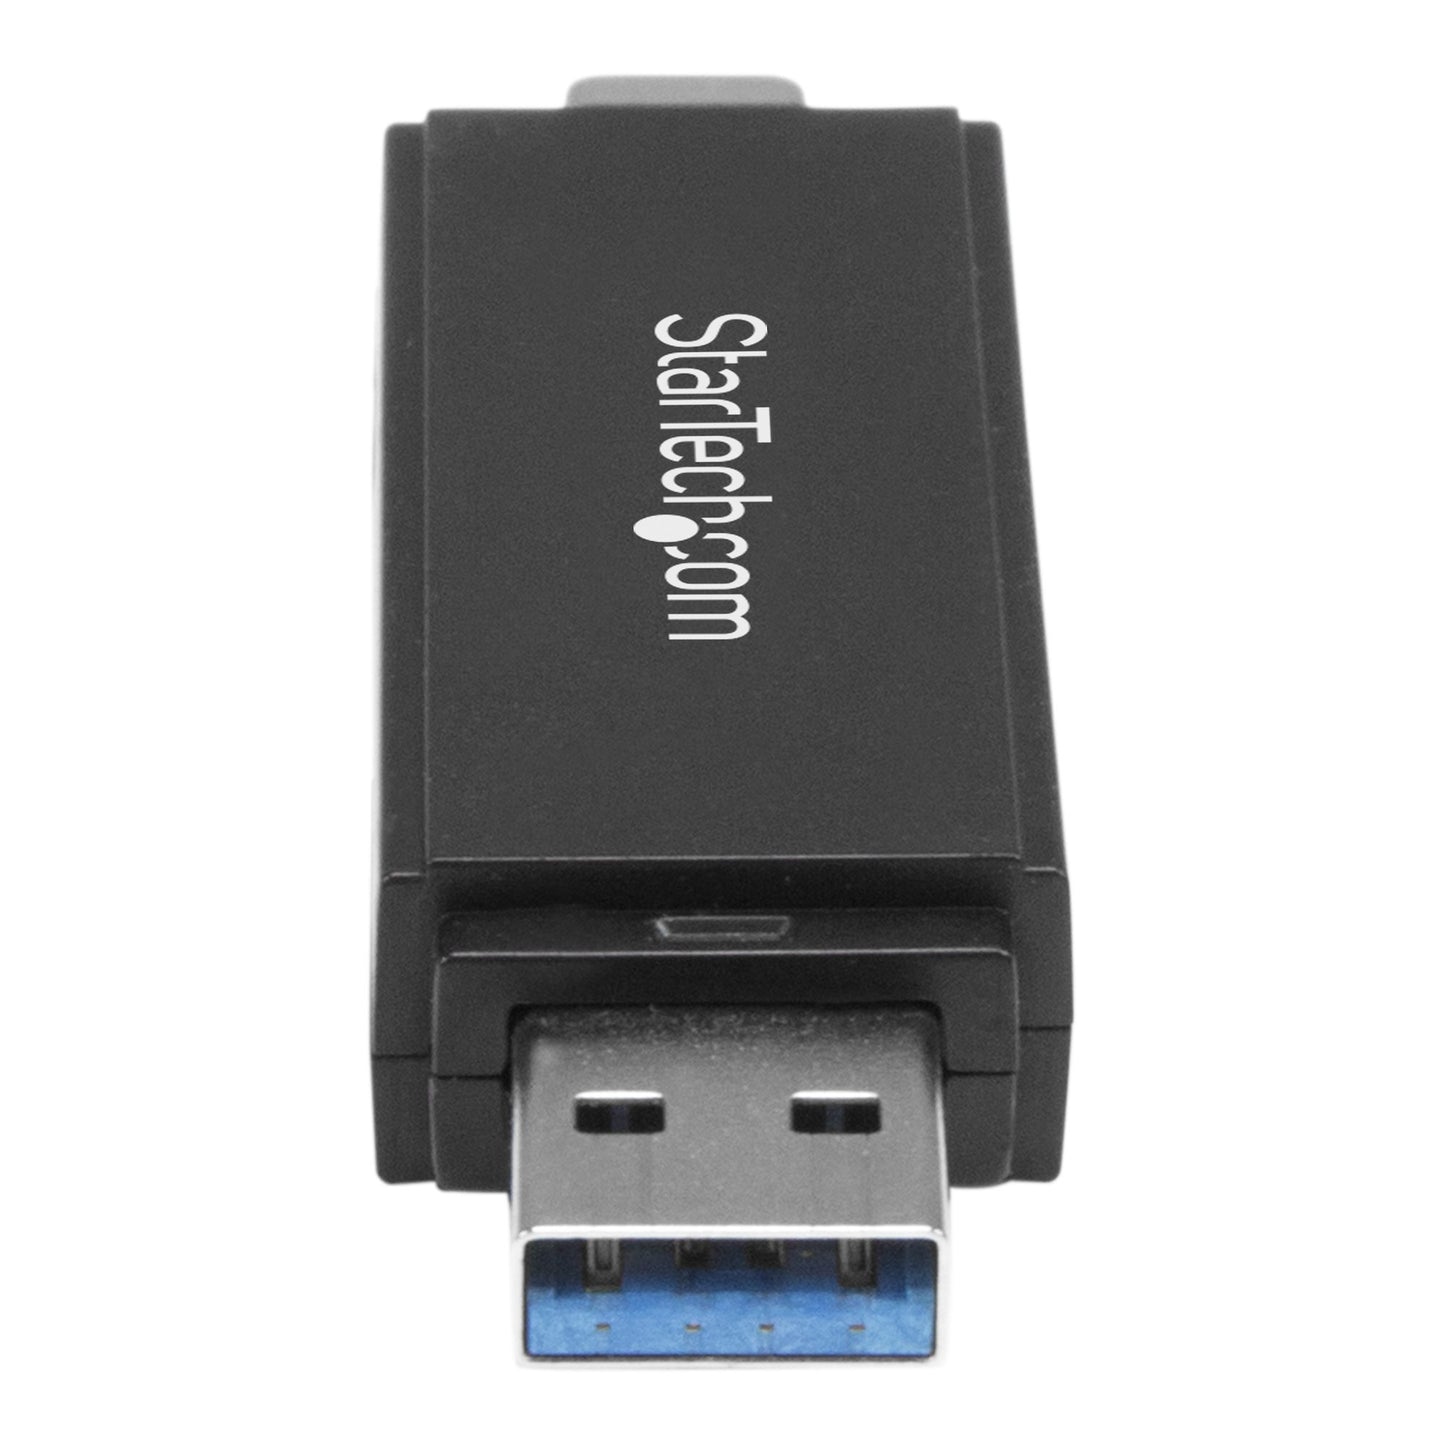 STARTECH CONSIG LECTOR USB 3.0 USB-C TIPO C Y UEXT SB-A DE TARJETAS SD MICRO SD